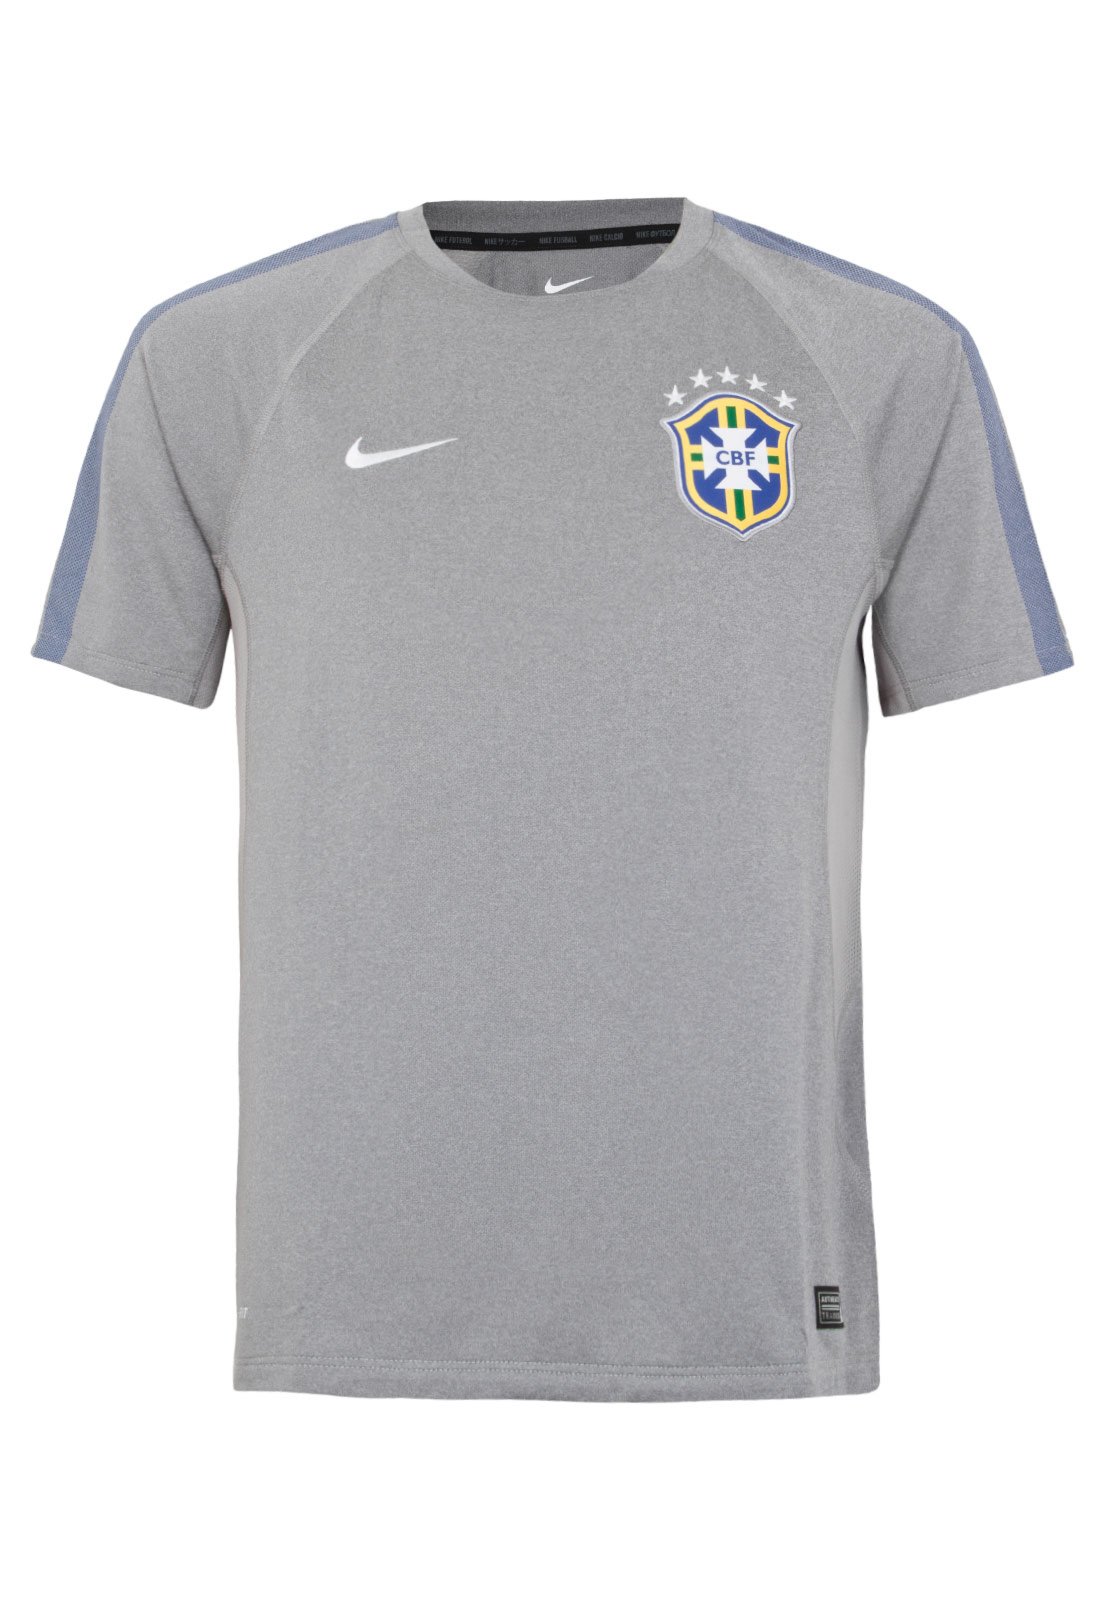 Camisa Brasil - Treino